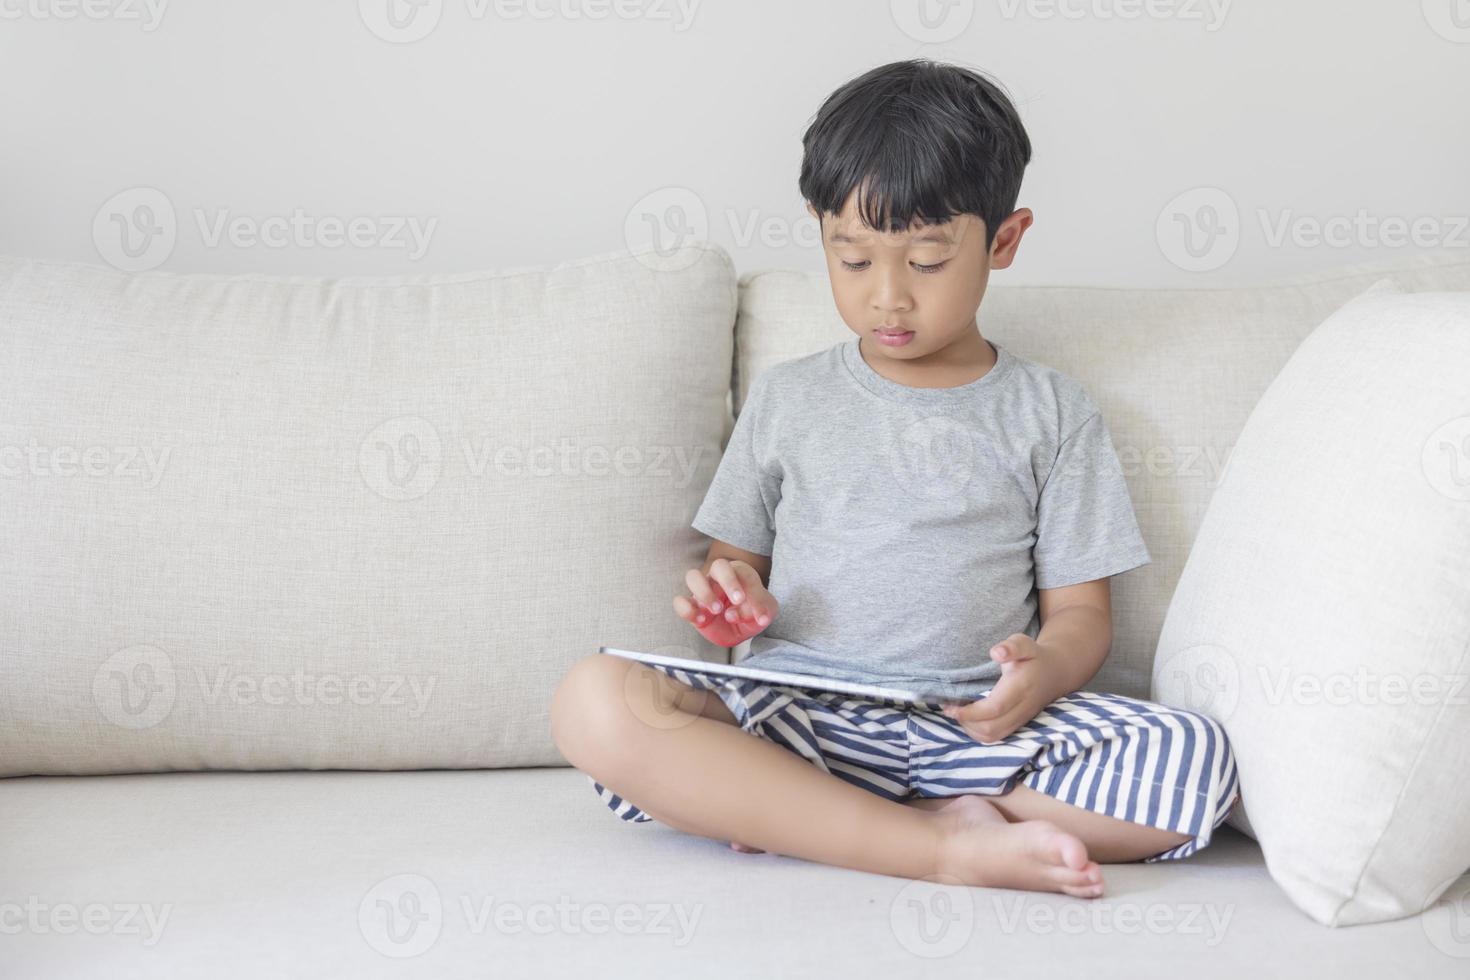 adorable garçon asiatique heureux vêtu d'une chemise grise et d'un short rayé bleu-blanc s'amuse à jouer avec sa tablette sur un canapé crème. regardant l'écran du mobile photo